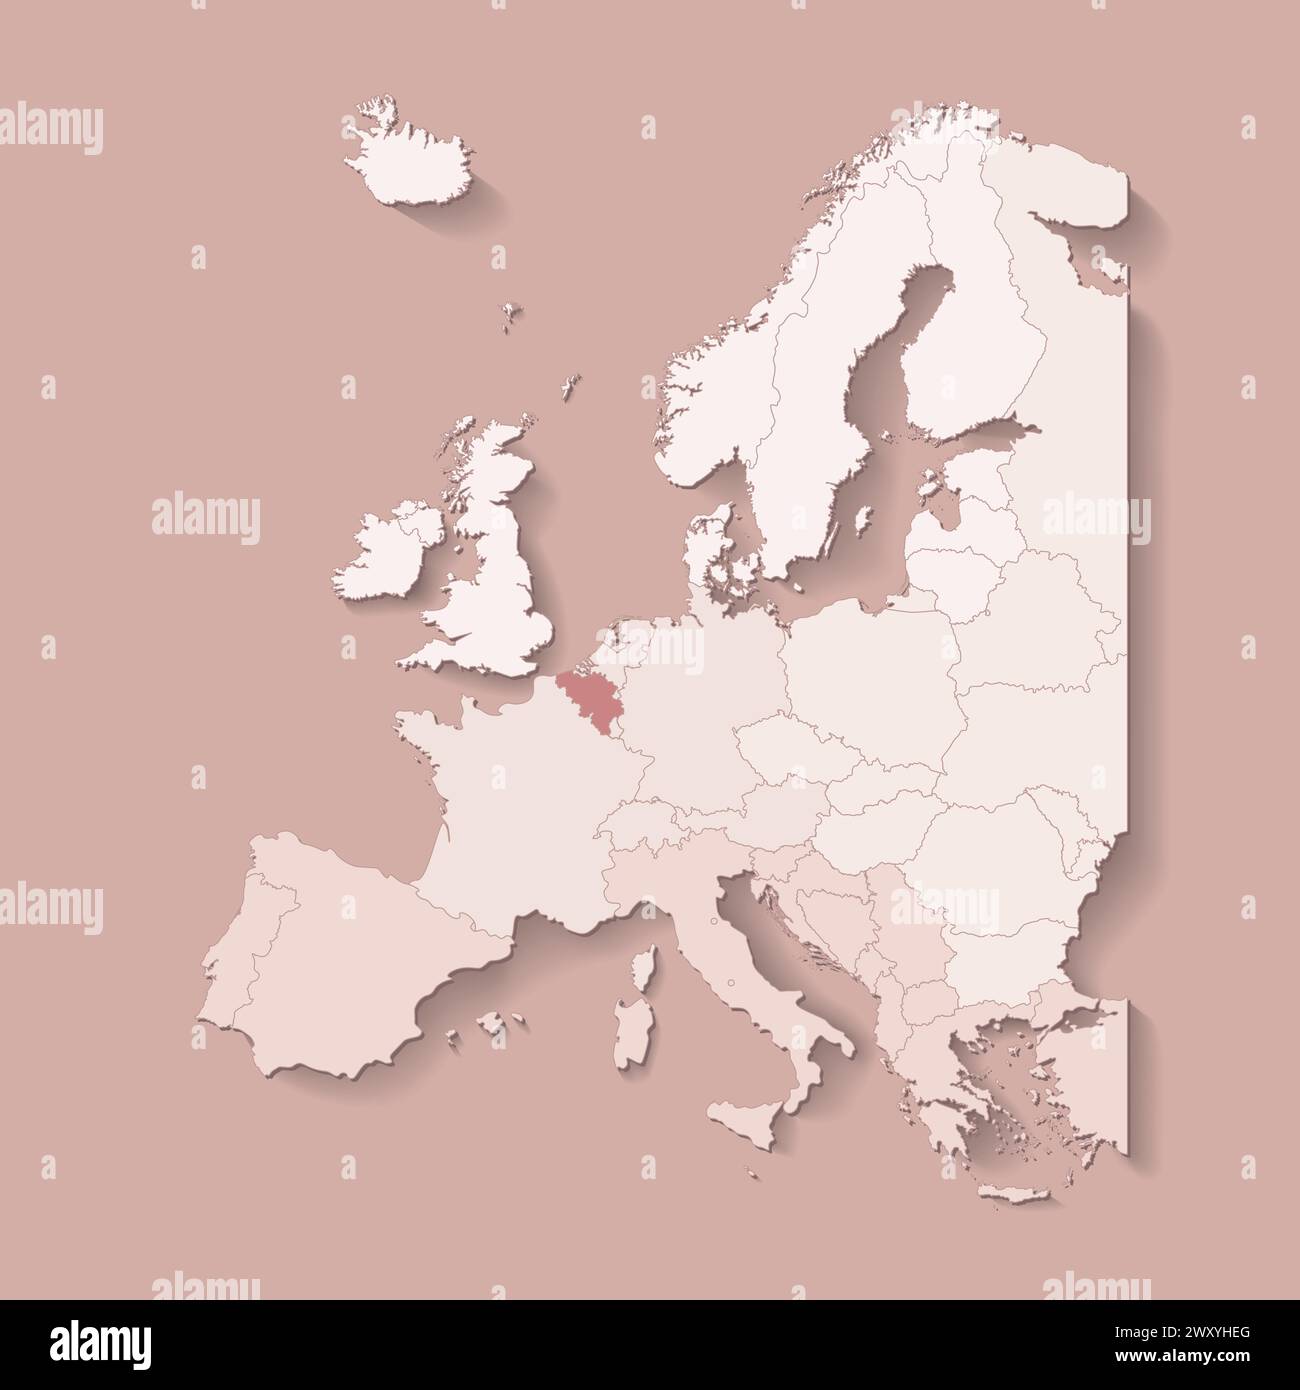 Vektor-Illustration mit europäischem Land mit Grenzen von staaten und markiertem Land Belgien. Politische Karte in braunen Farben mit West-, Süd- und etc.-Re Stock Vektor